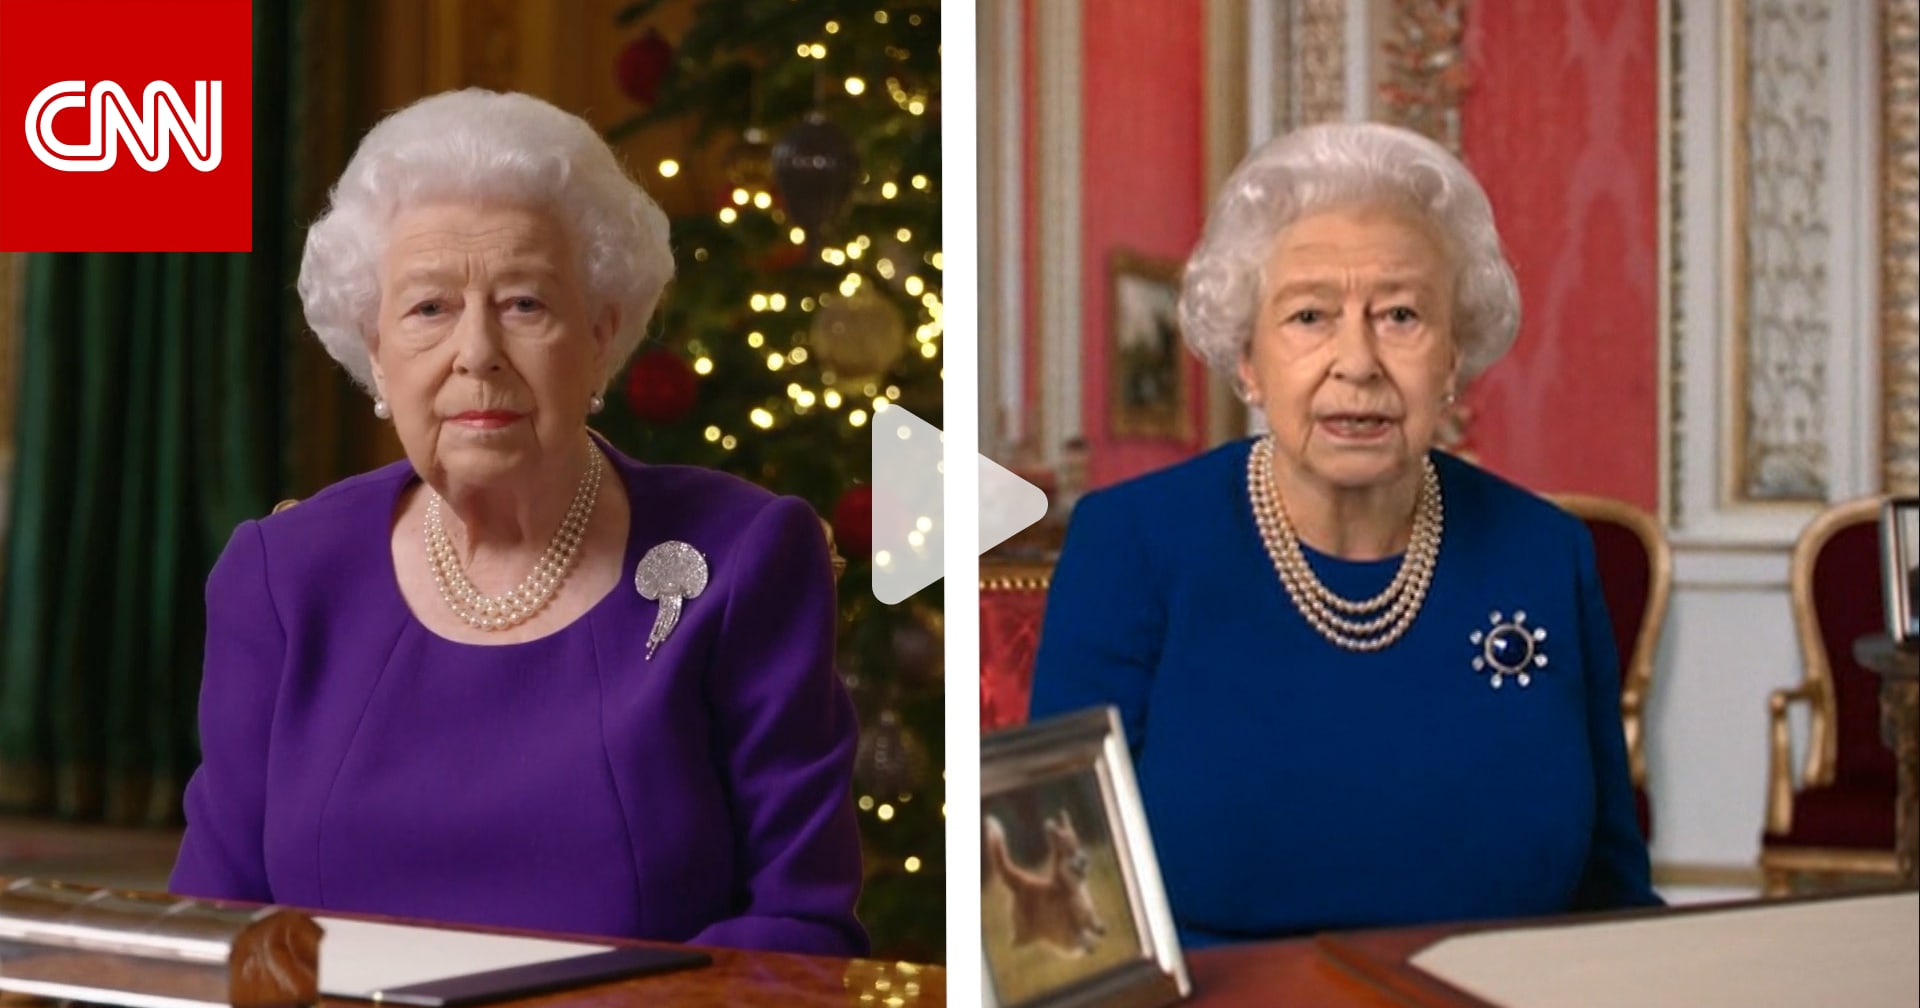 فيديو ملكة بريطانيا وهي ترقص يكشف مدى تقدم تقنيات الأخبار الزائفة Cnn 